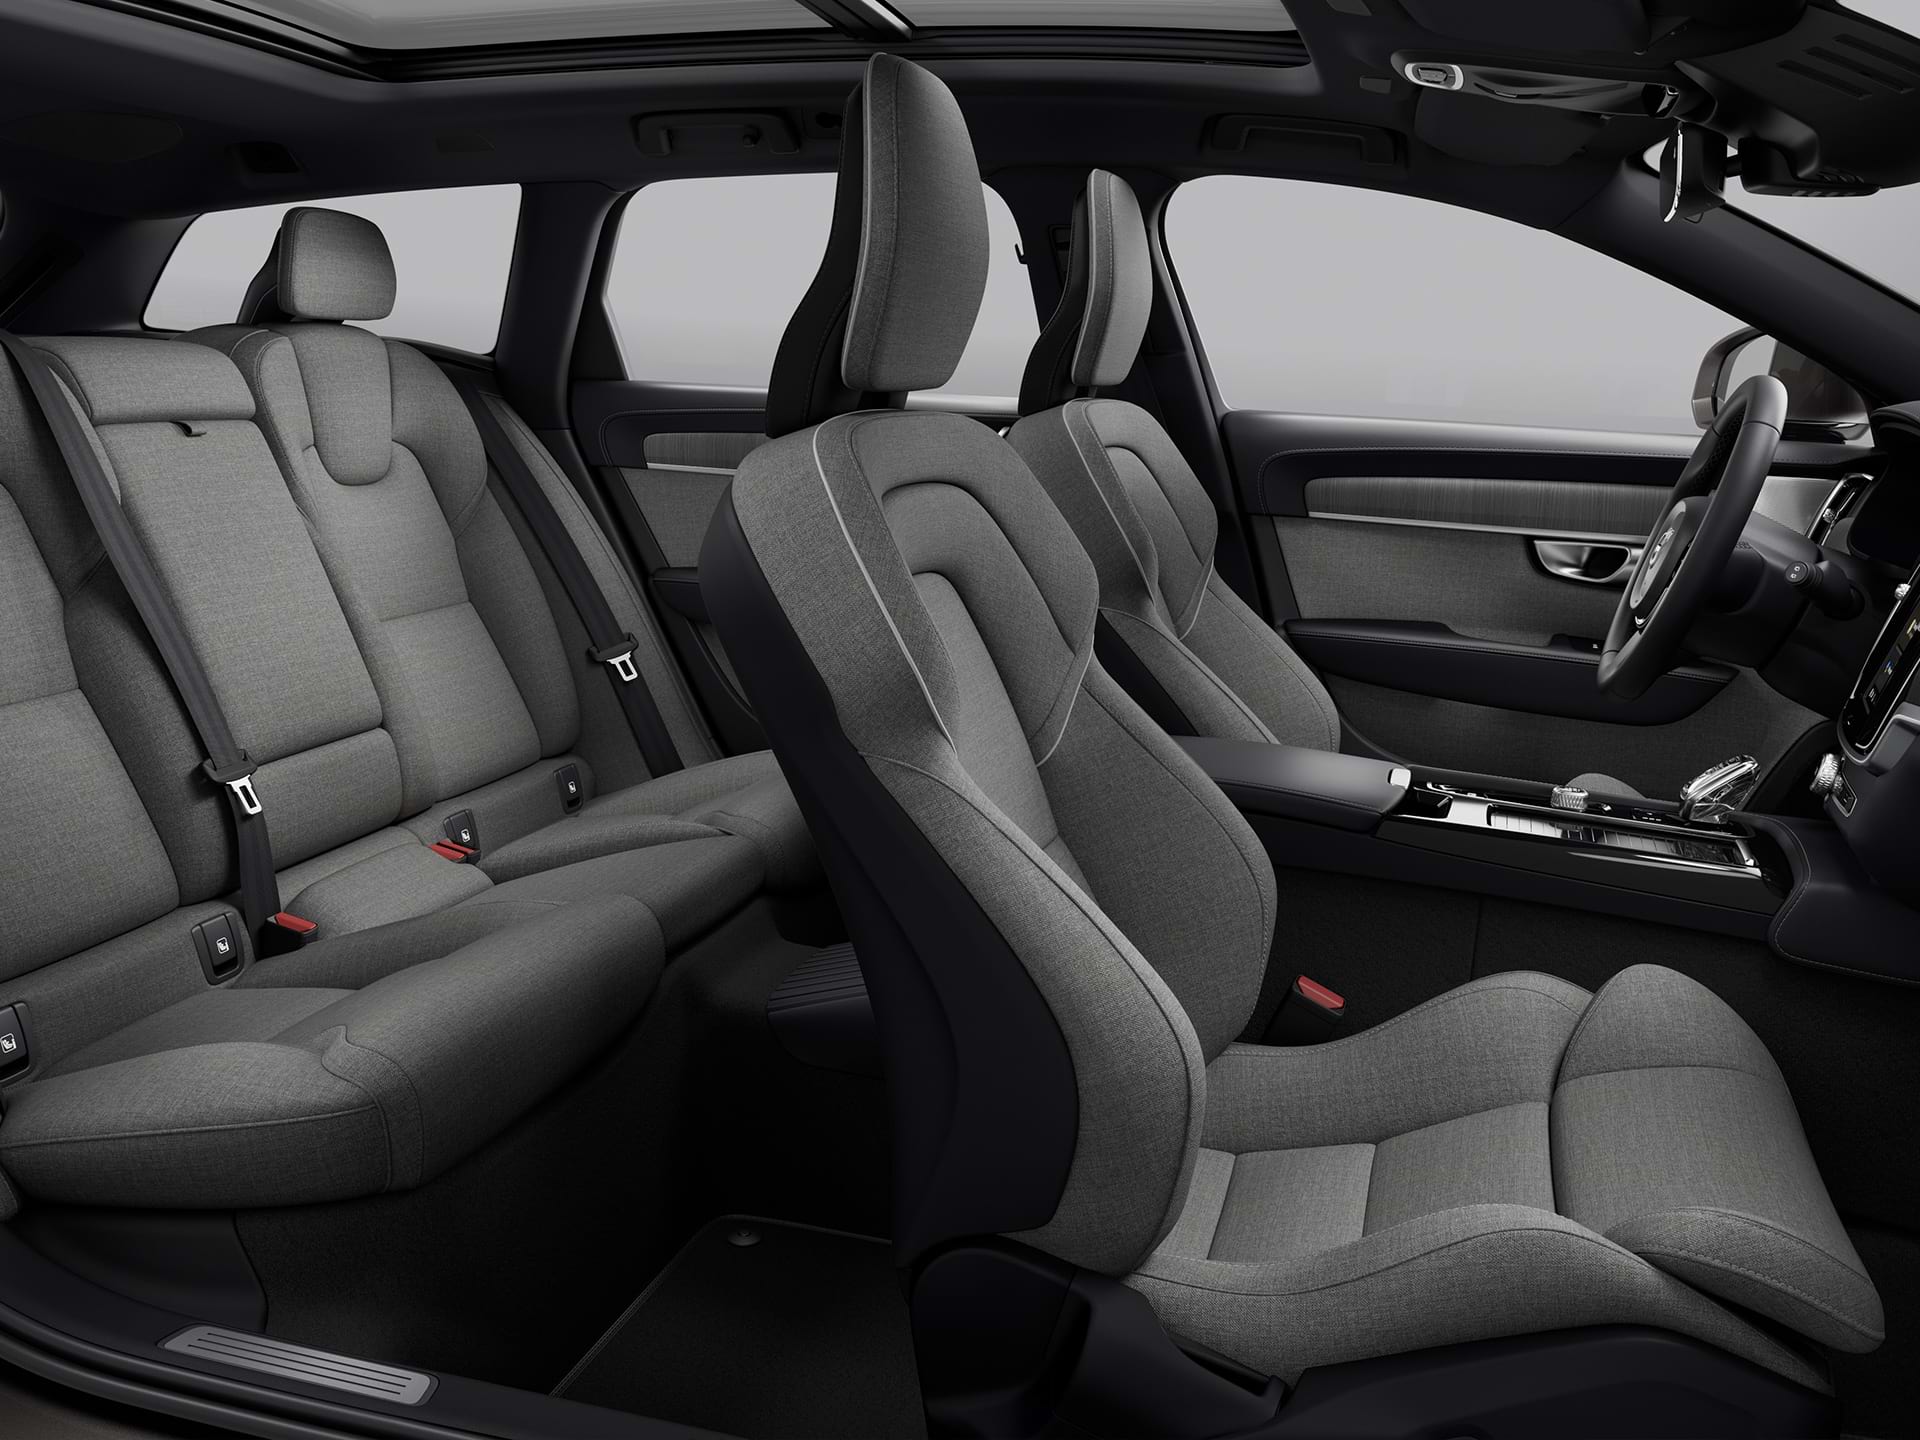 Eine Weitwinkelansicht aller vier gepolsterten Sitze im geräumigen Innenraum eines Volvo Kombis.